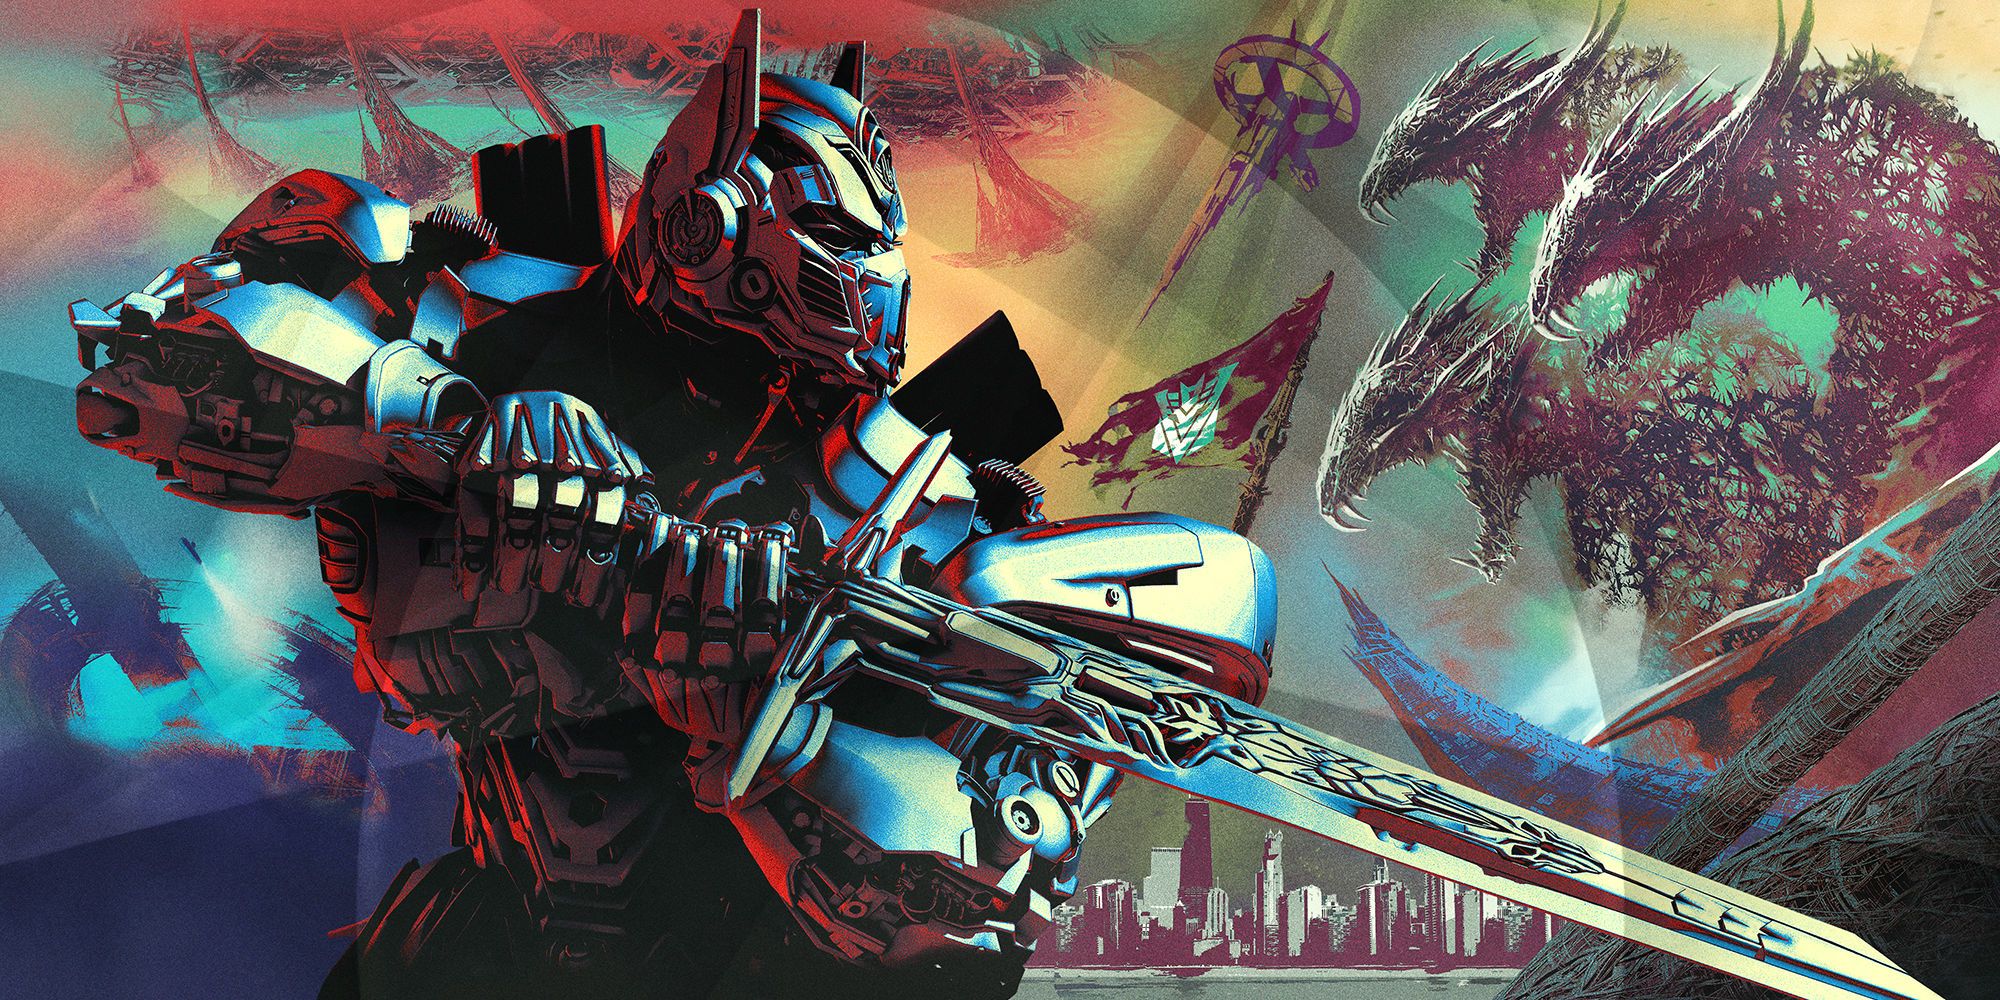 transformers 5 the last knight hd